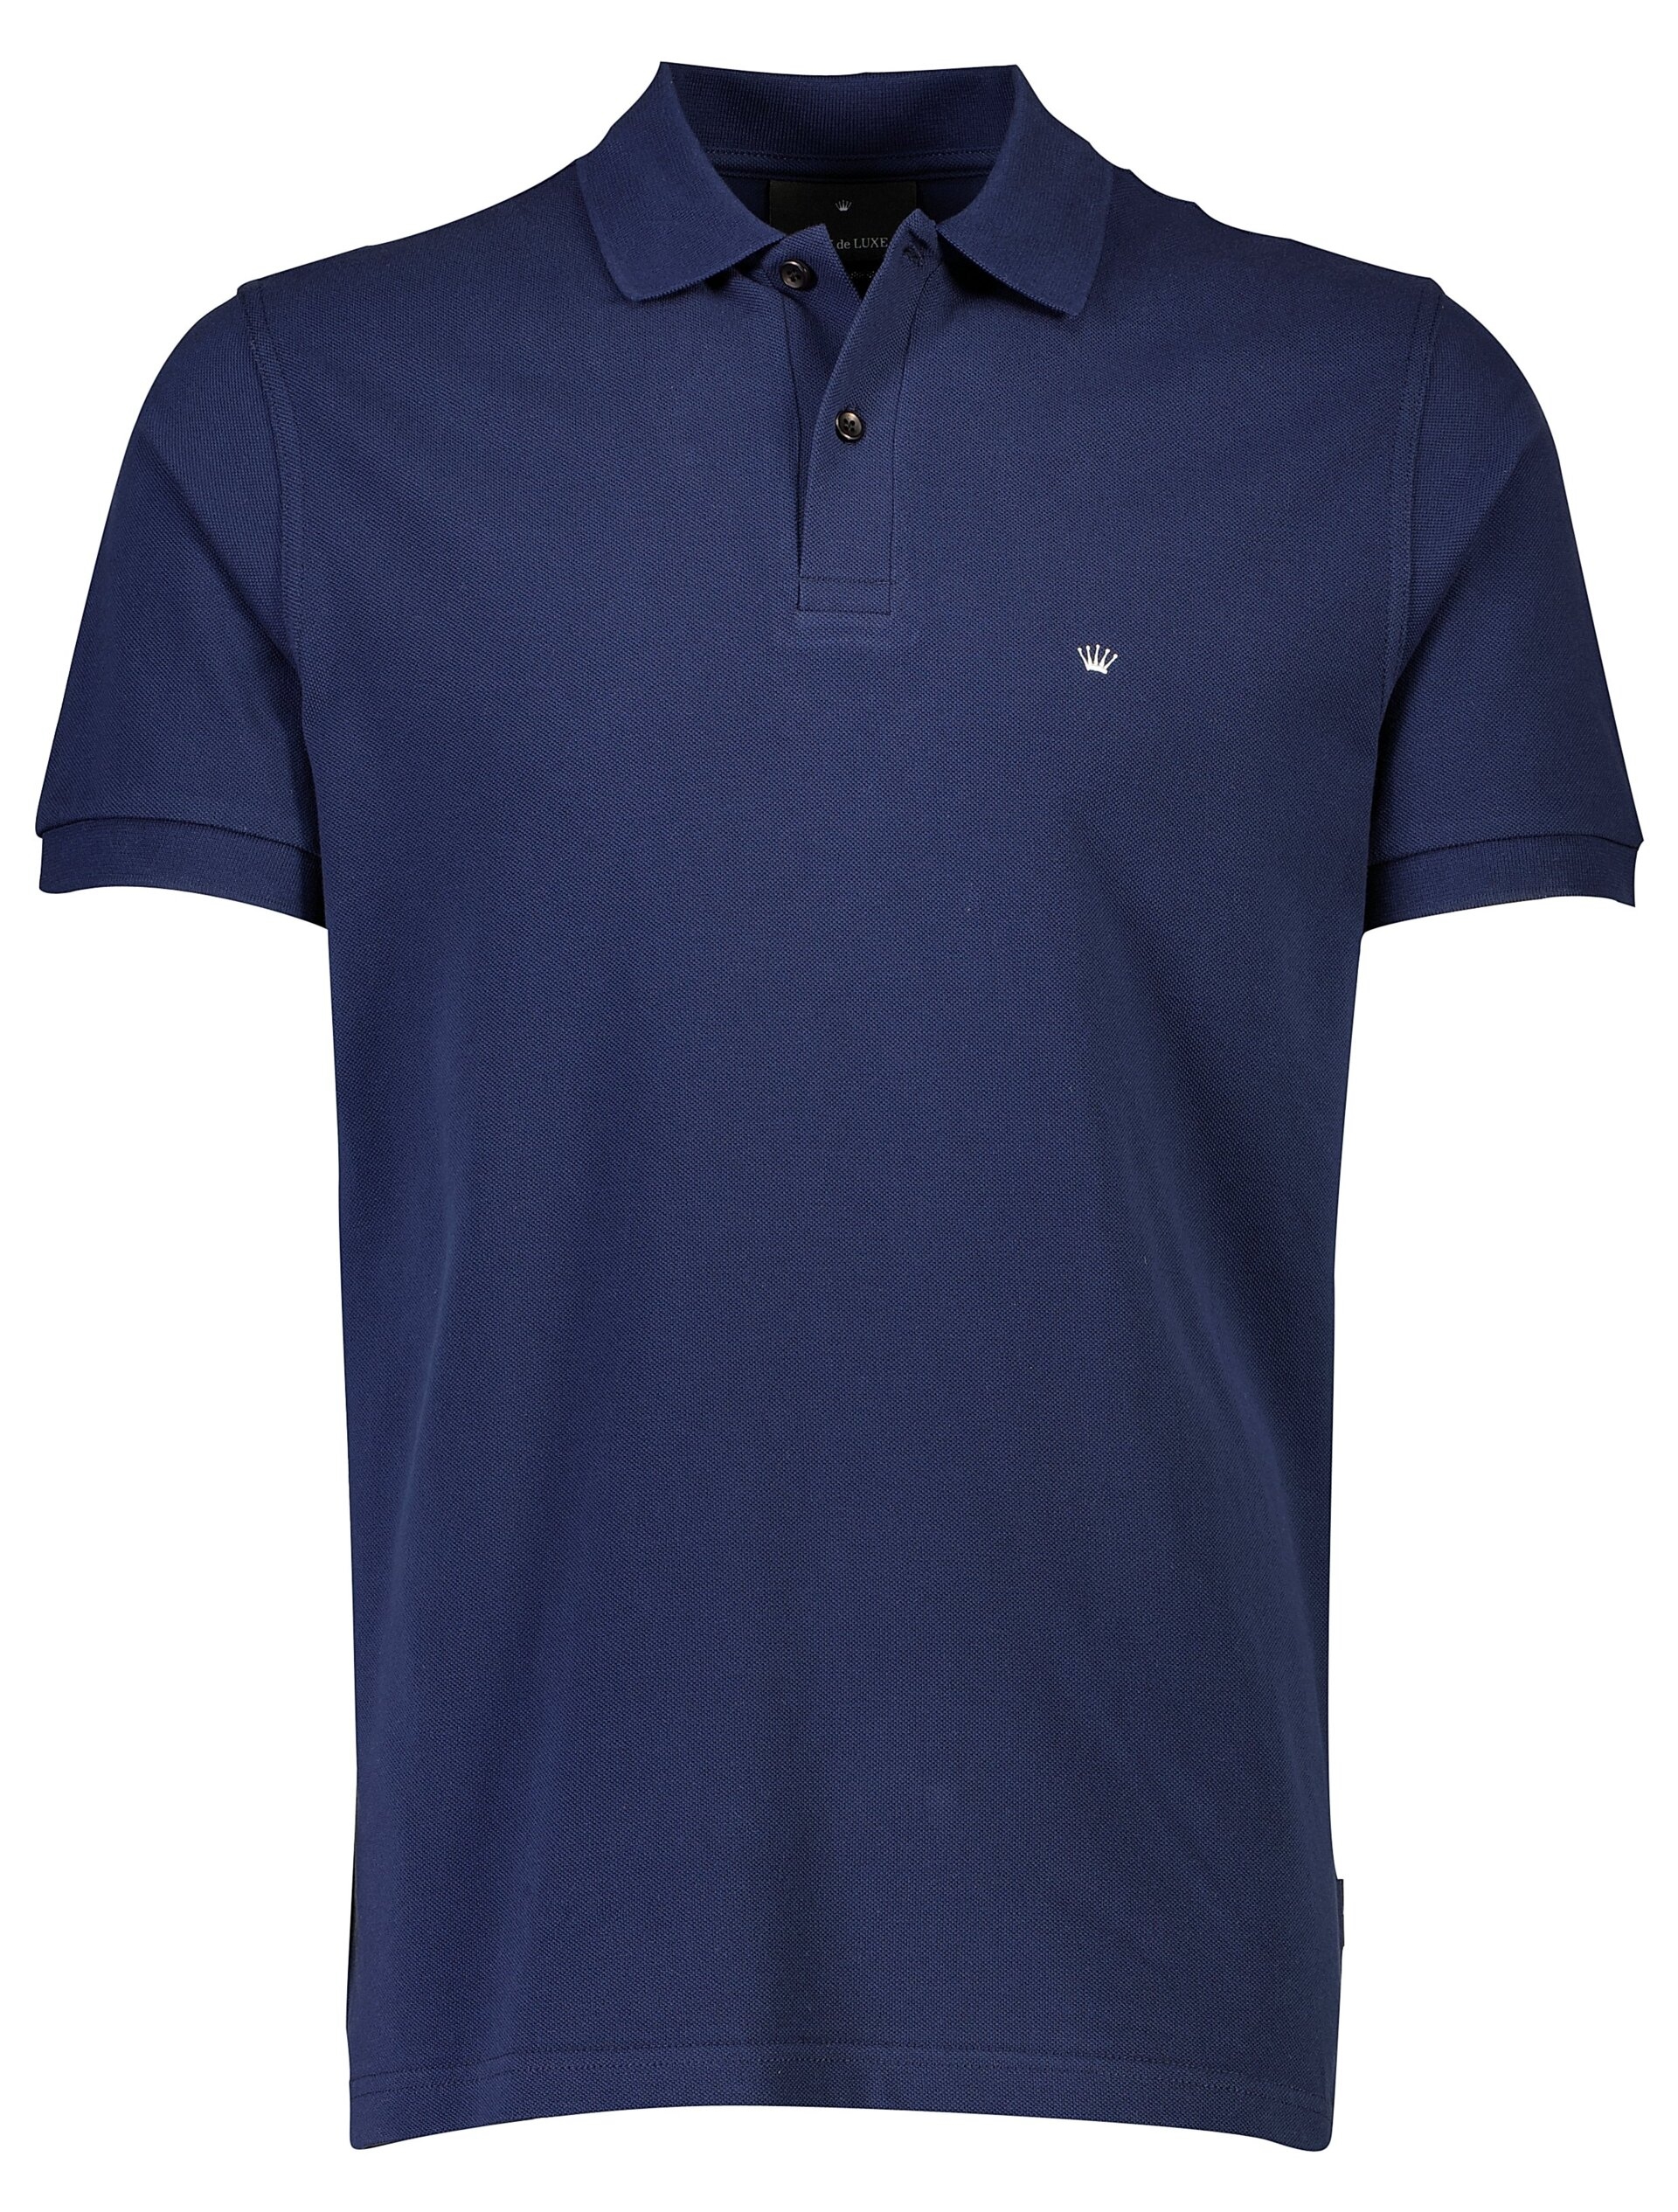 Junk de Luxe Polo shirt blue / dk blue